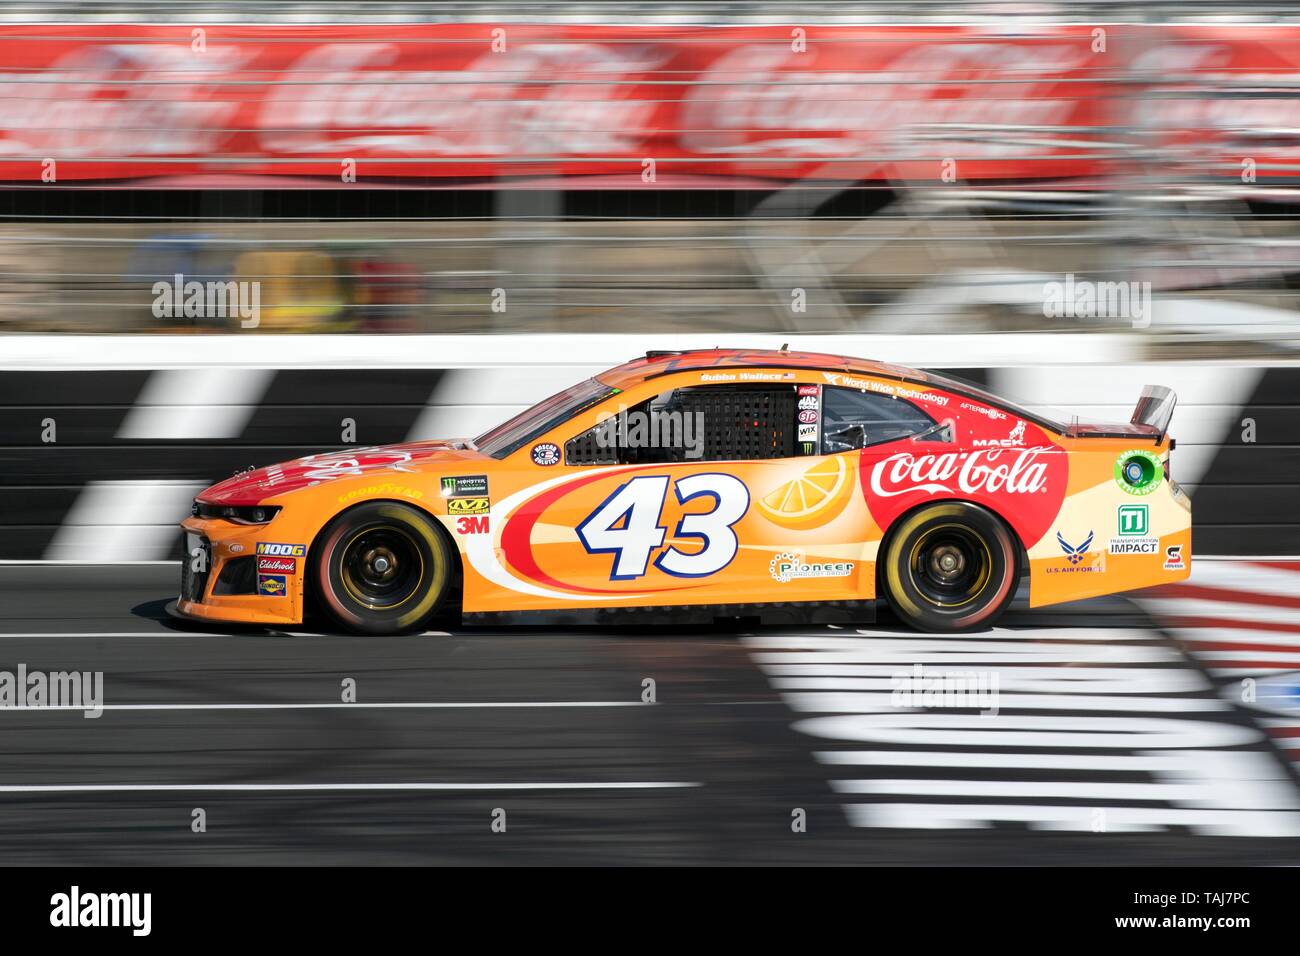 Driver di NASCAR Bubba Wallace guida #43 nelle qualificazioni per la Coca Cola 600 a Charlotte Motor Speedway maggio 25, 2019 in concordia, N.C. Credito: Planetpix/Alamy Live News Foto Stock